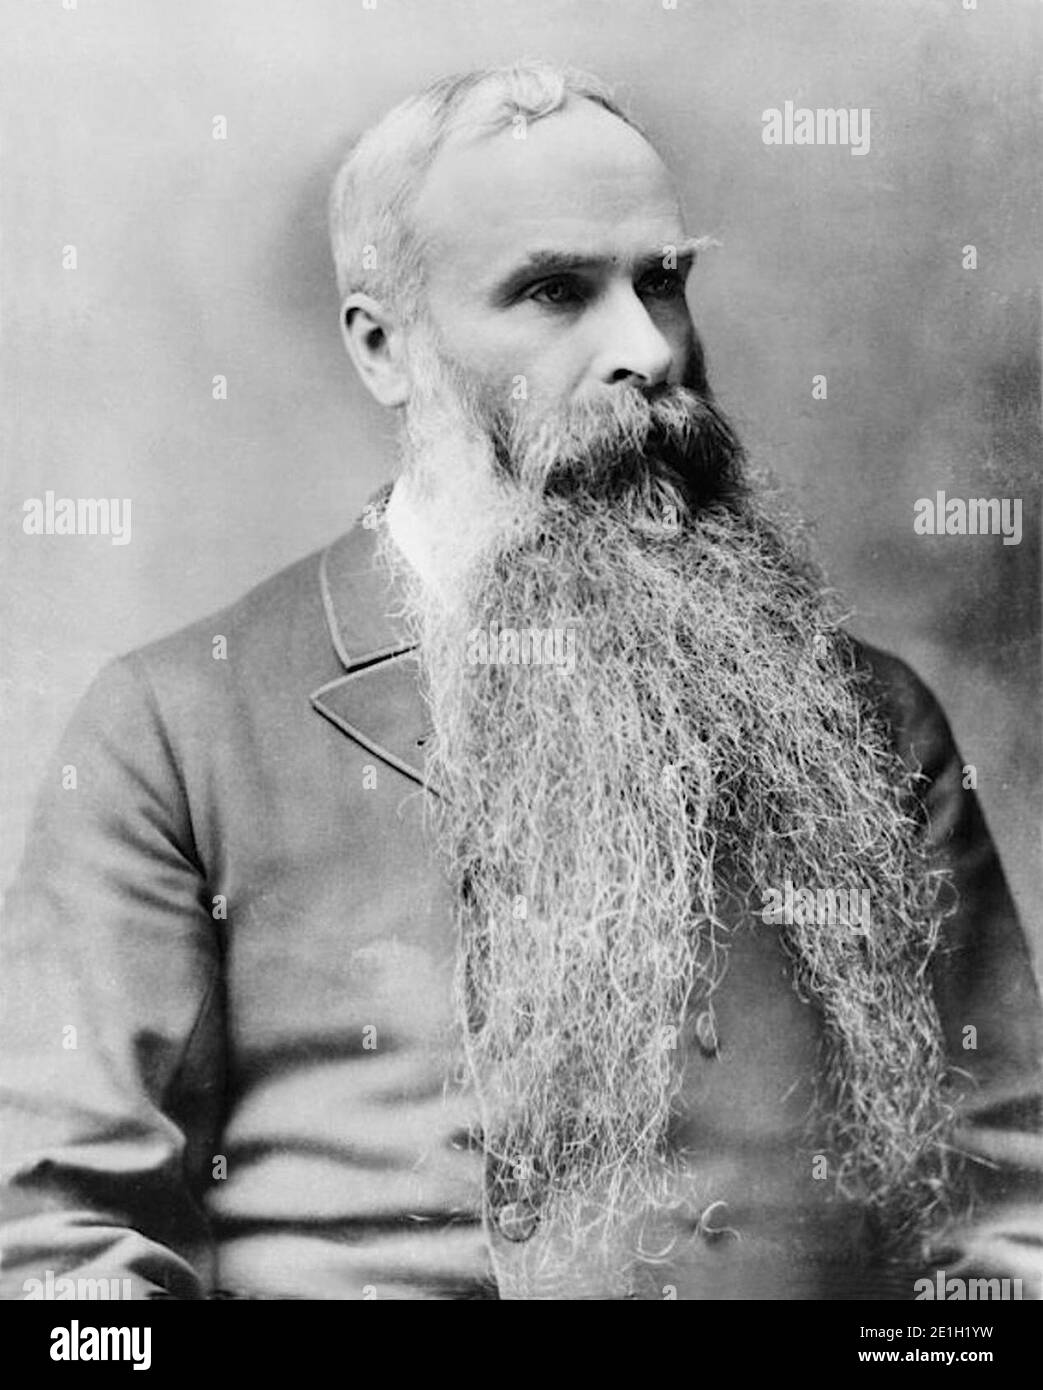 jameson taillon beard